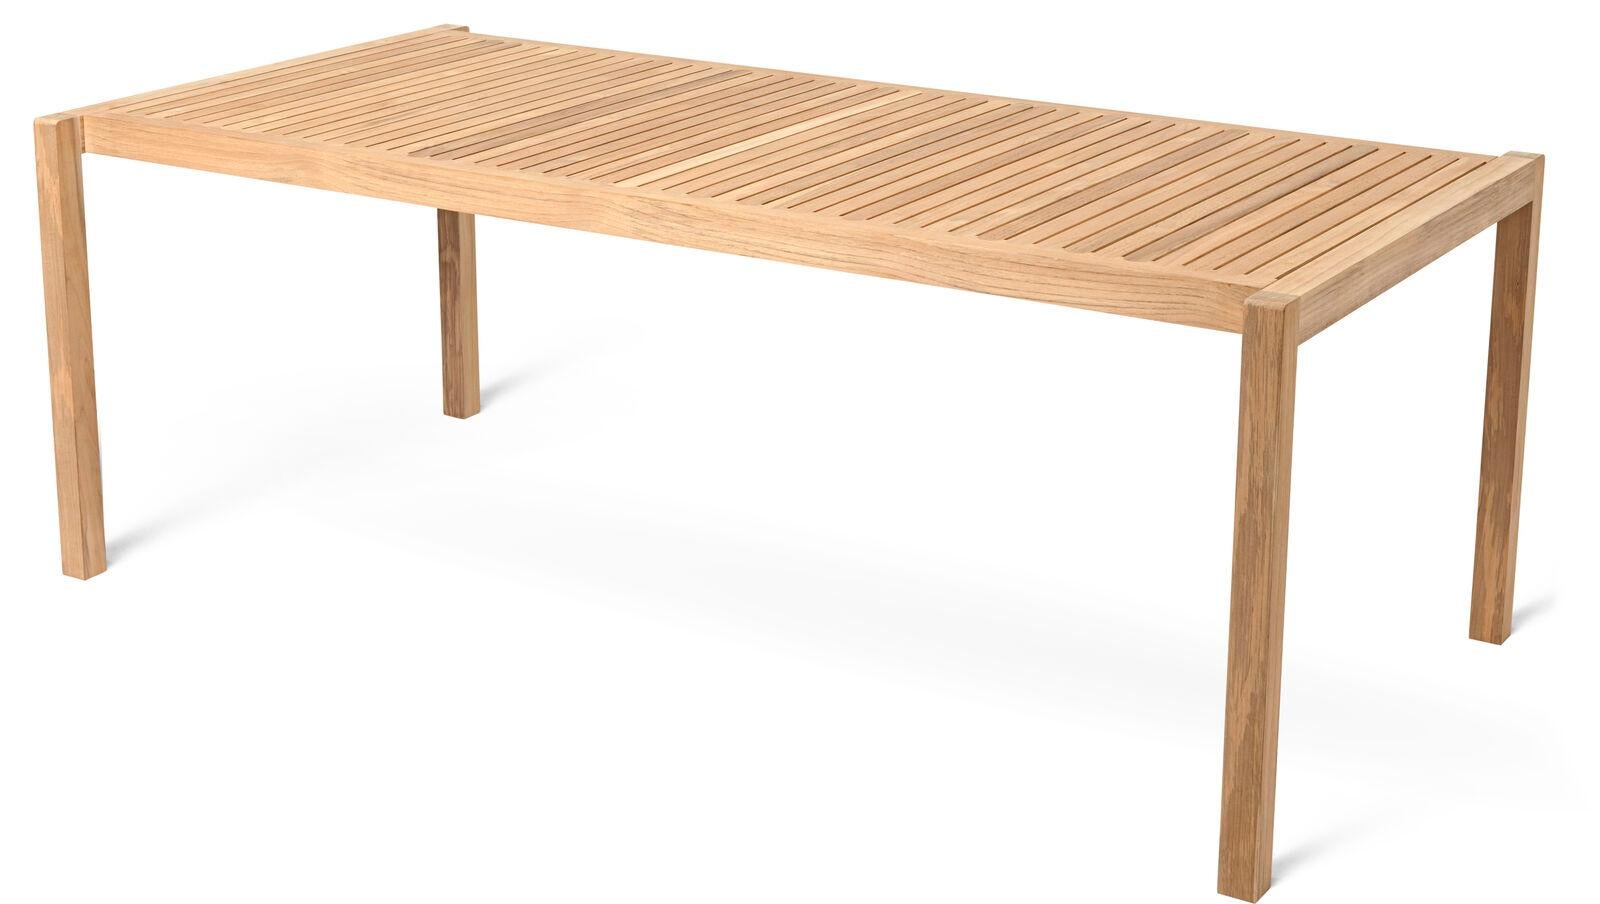 La table AH901 Outdoor Dining a été conçue par Alfred Homann en 2022 dans le cadre de la série AH Outdoor, caractérisée par des lignes strictes élégamment unies à des détails doux et arrondis. Comme le reste de la série, la table est fabriquée en